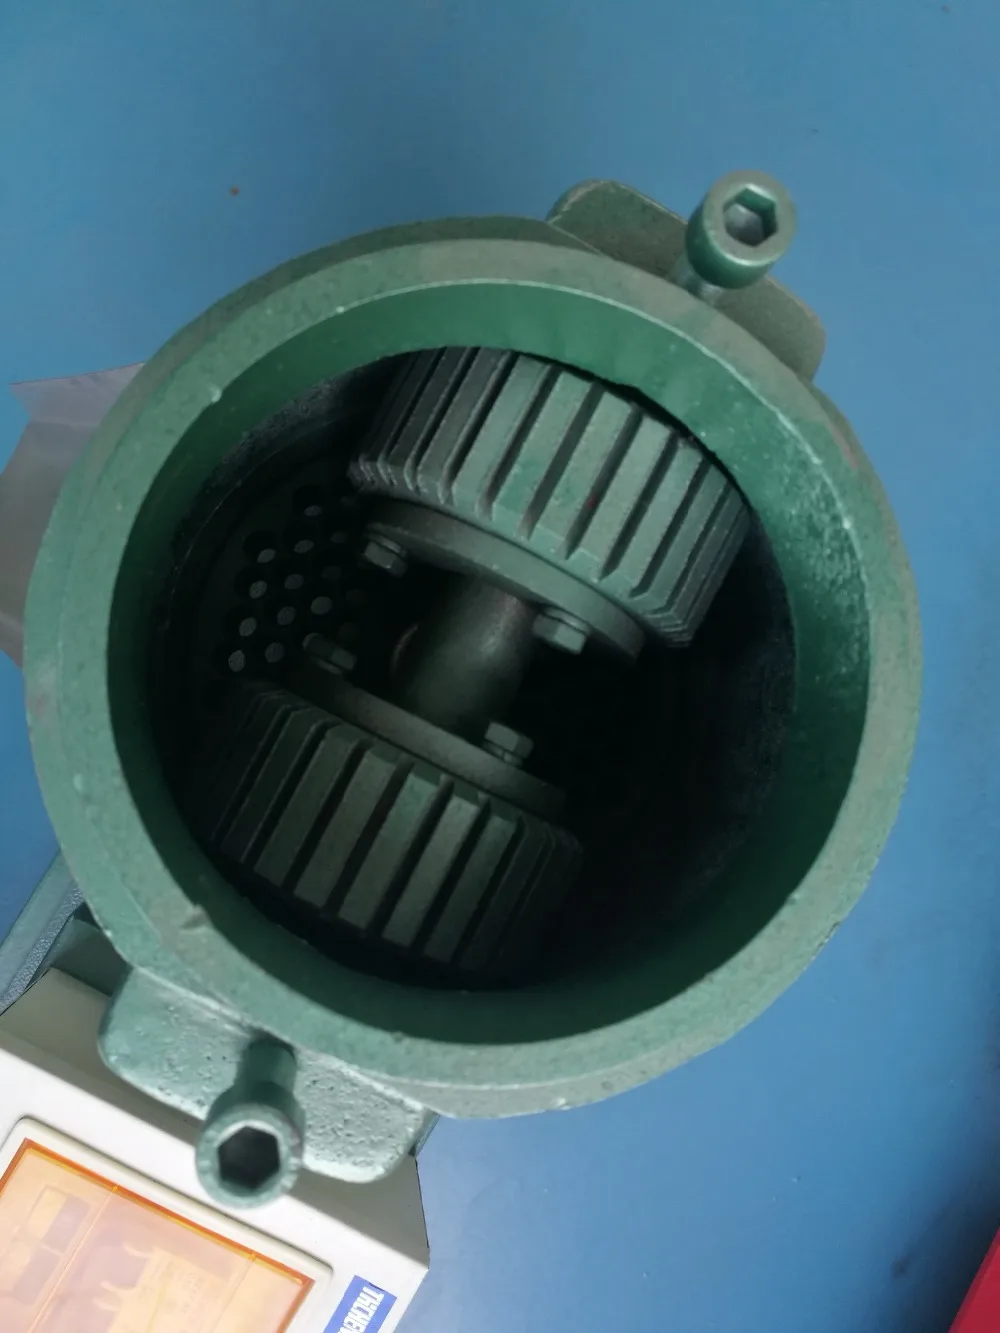 Головка KL120 гранулятор машина для производства гранул